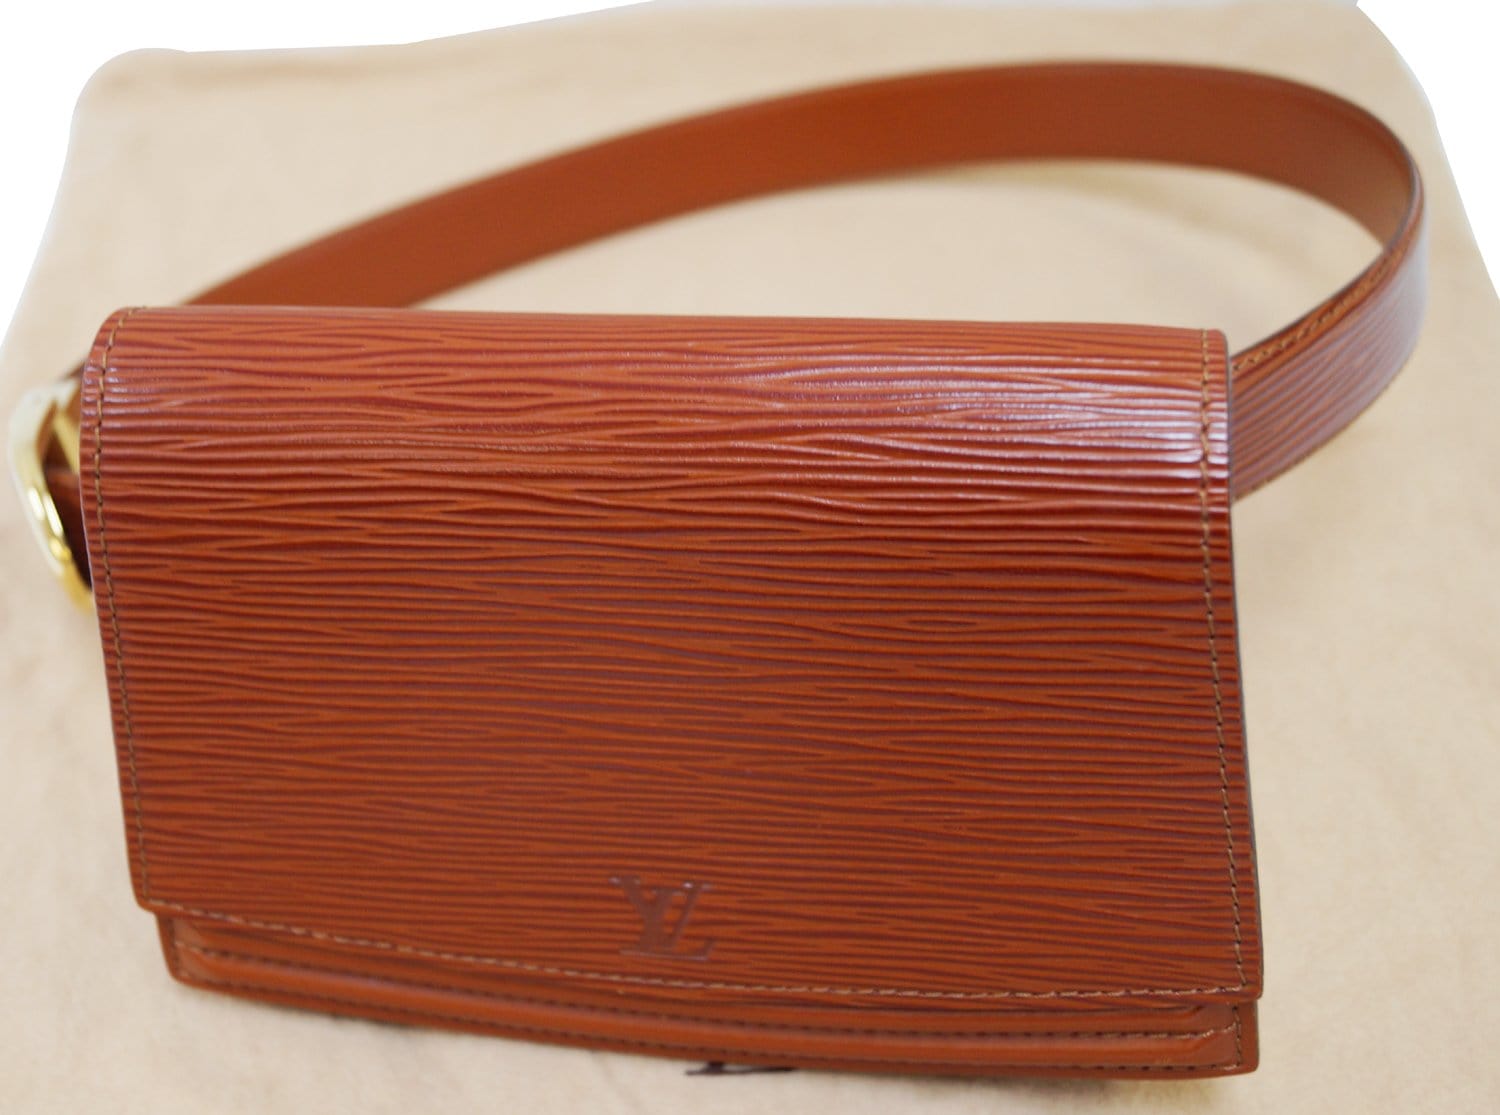 Louis Vuitton Epi Tilsitt Belt Bag - Red Waist Bags, Handbags